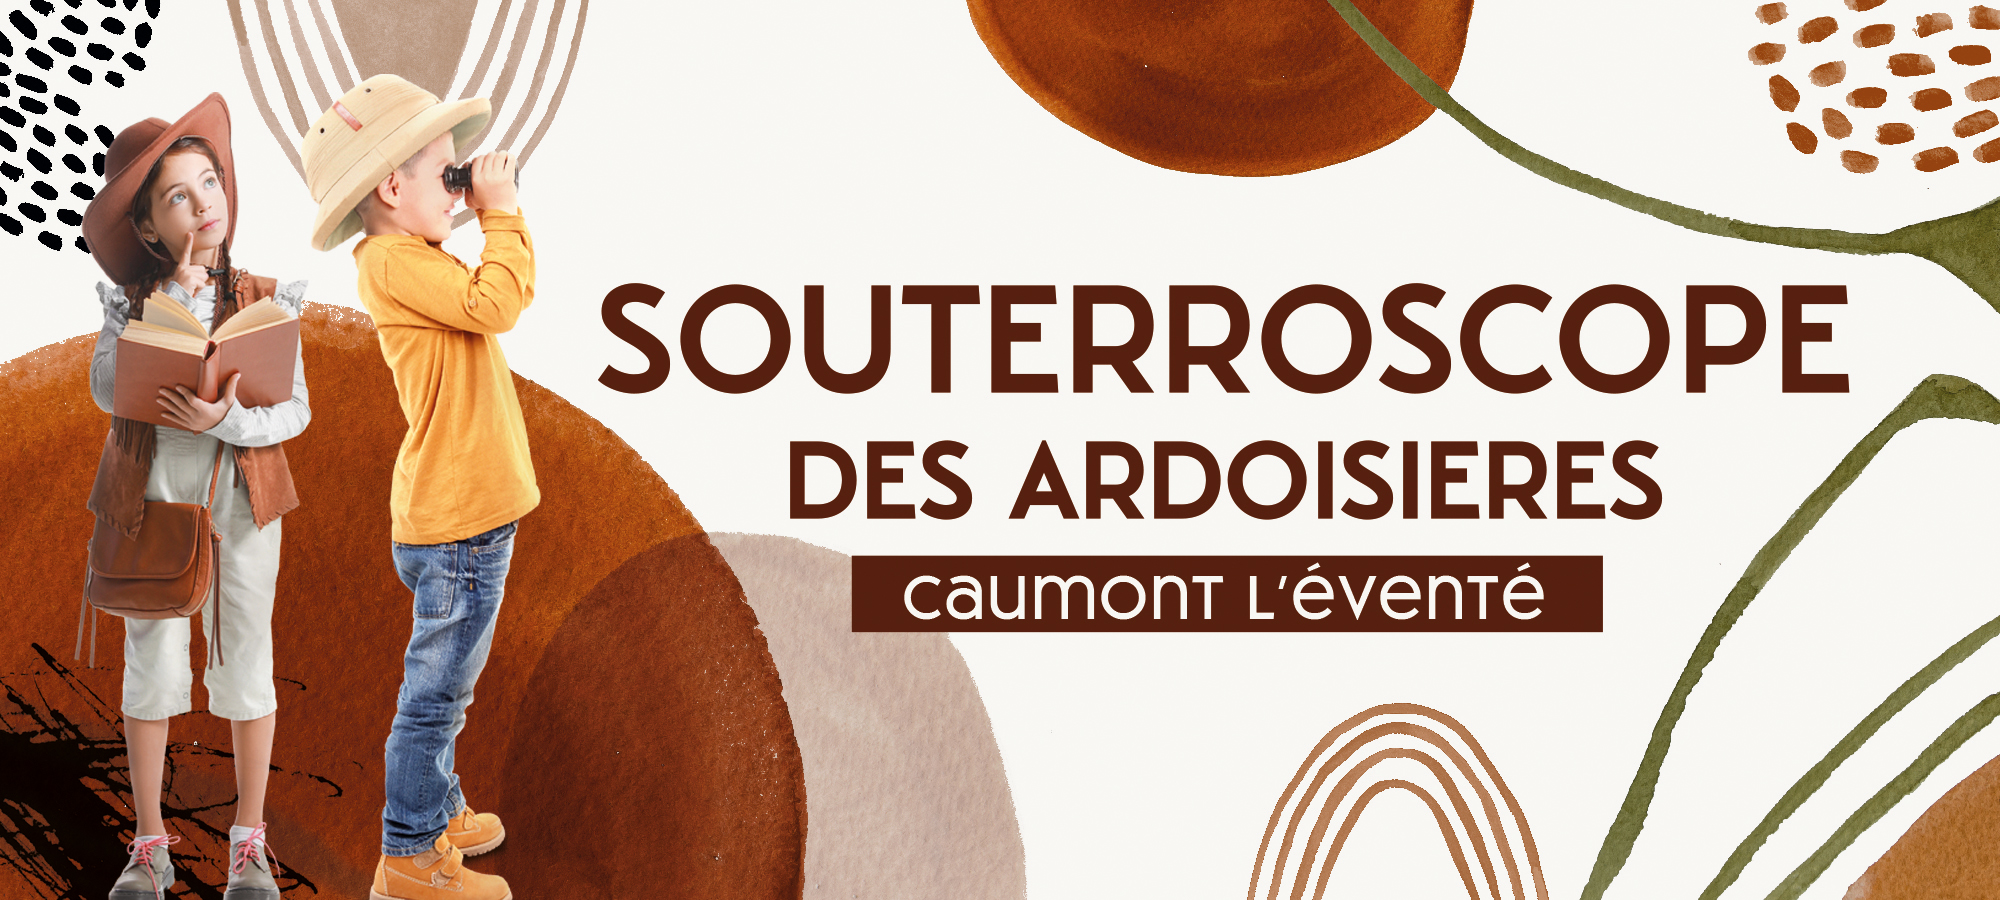 SOUTERROSCOPE DES ARDOISIERES © Agence Trois Petits Points Communication - Verson